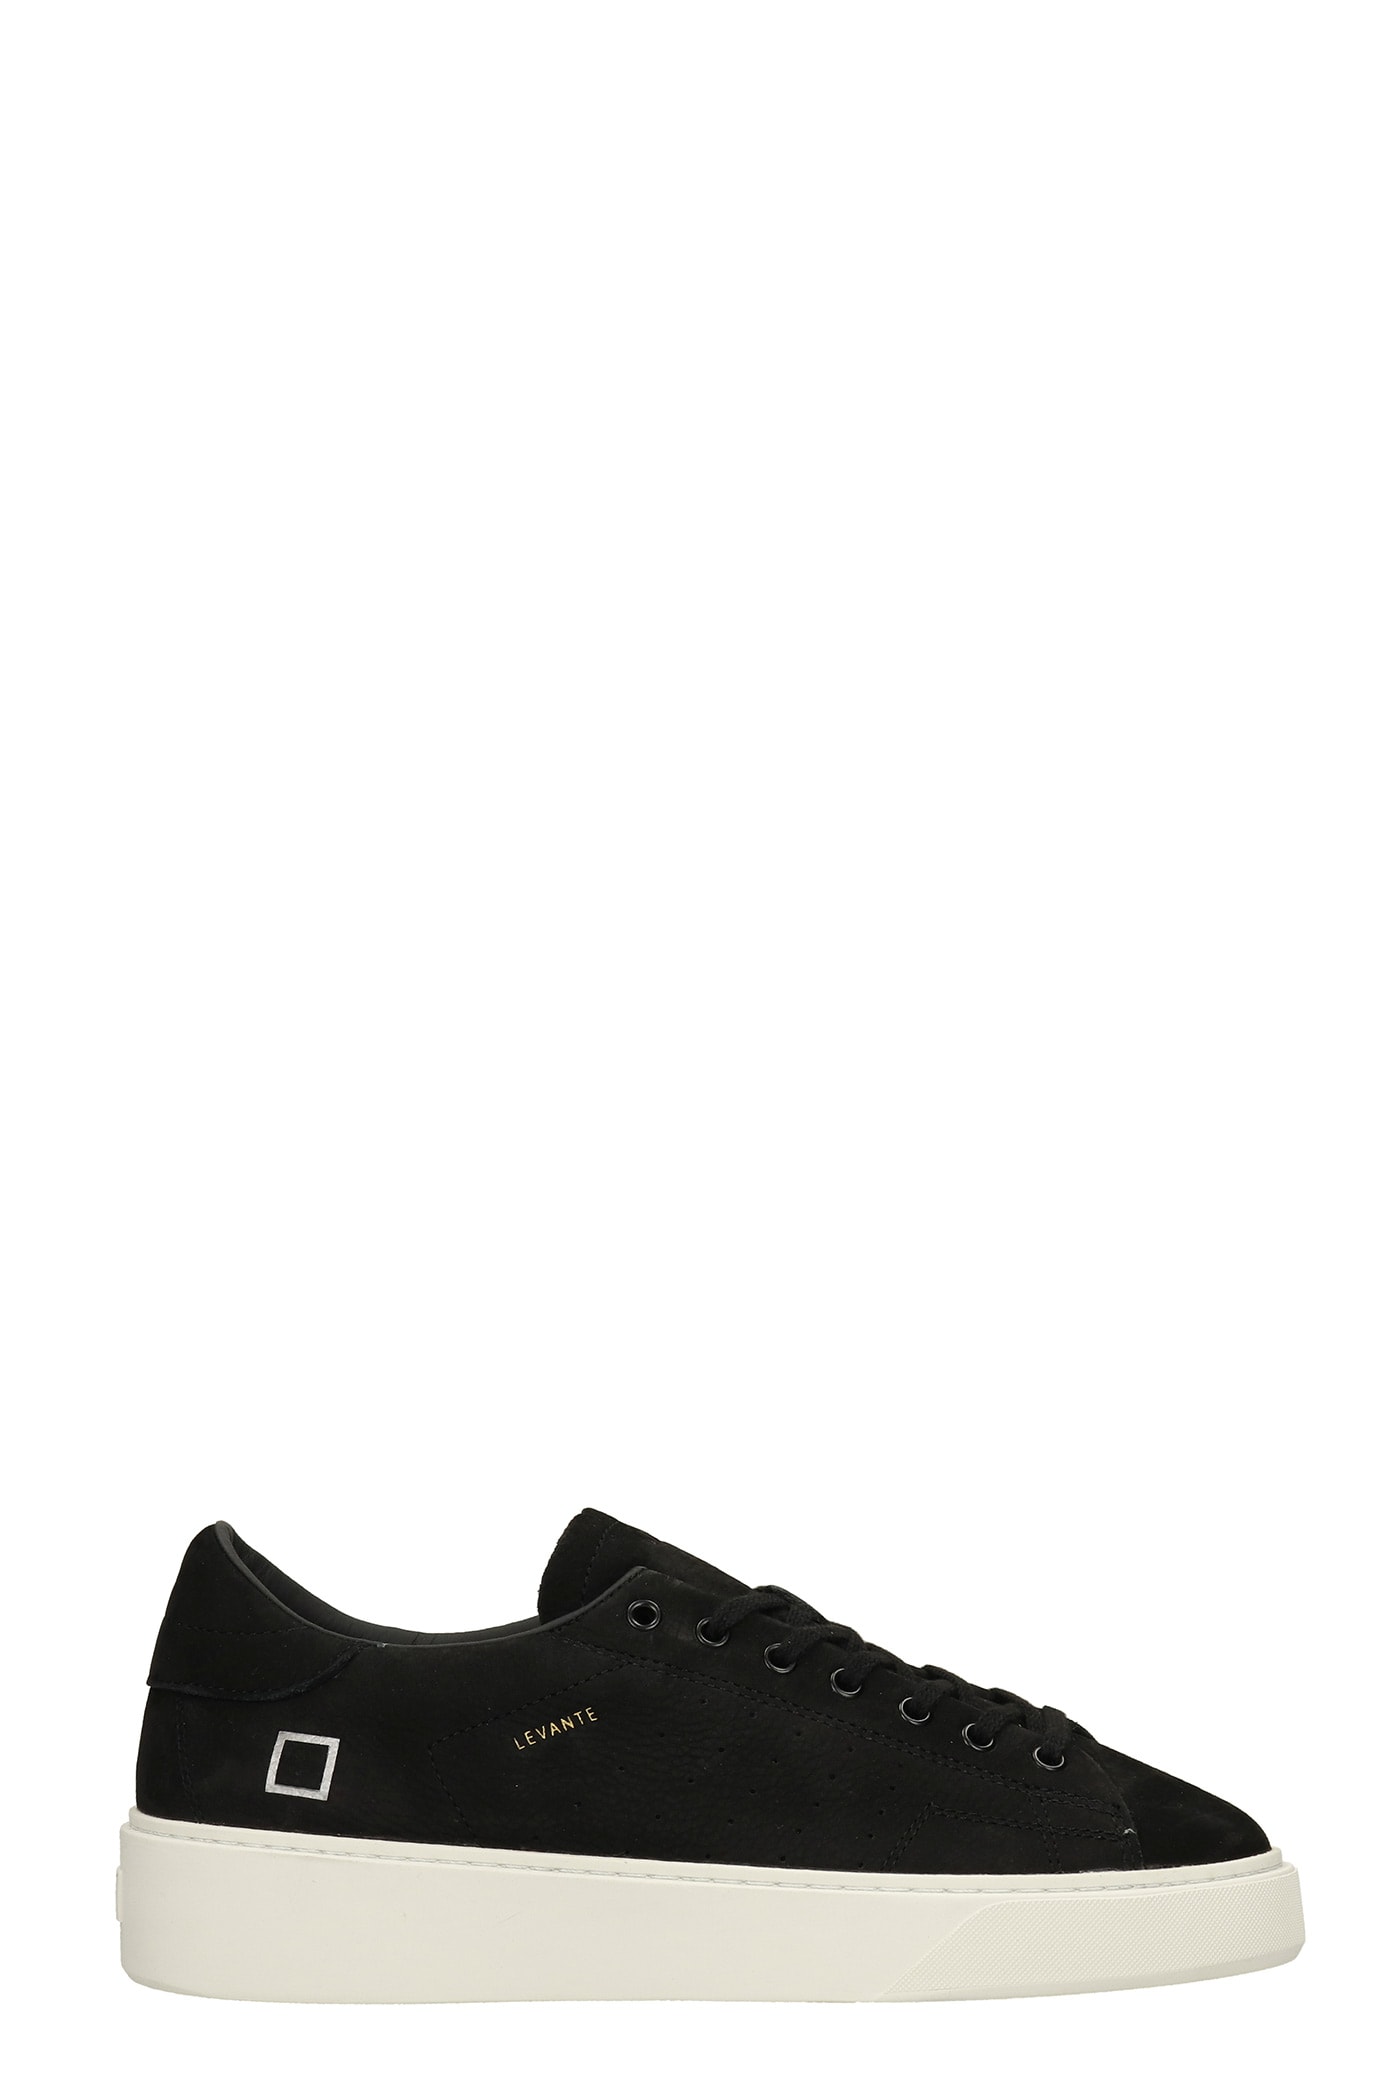 D.A.T.E. Levante Sneakers In Black Nubuck